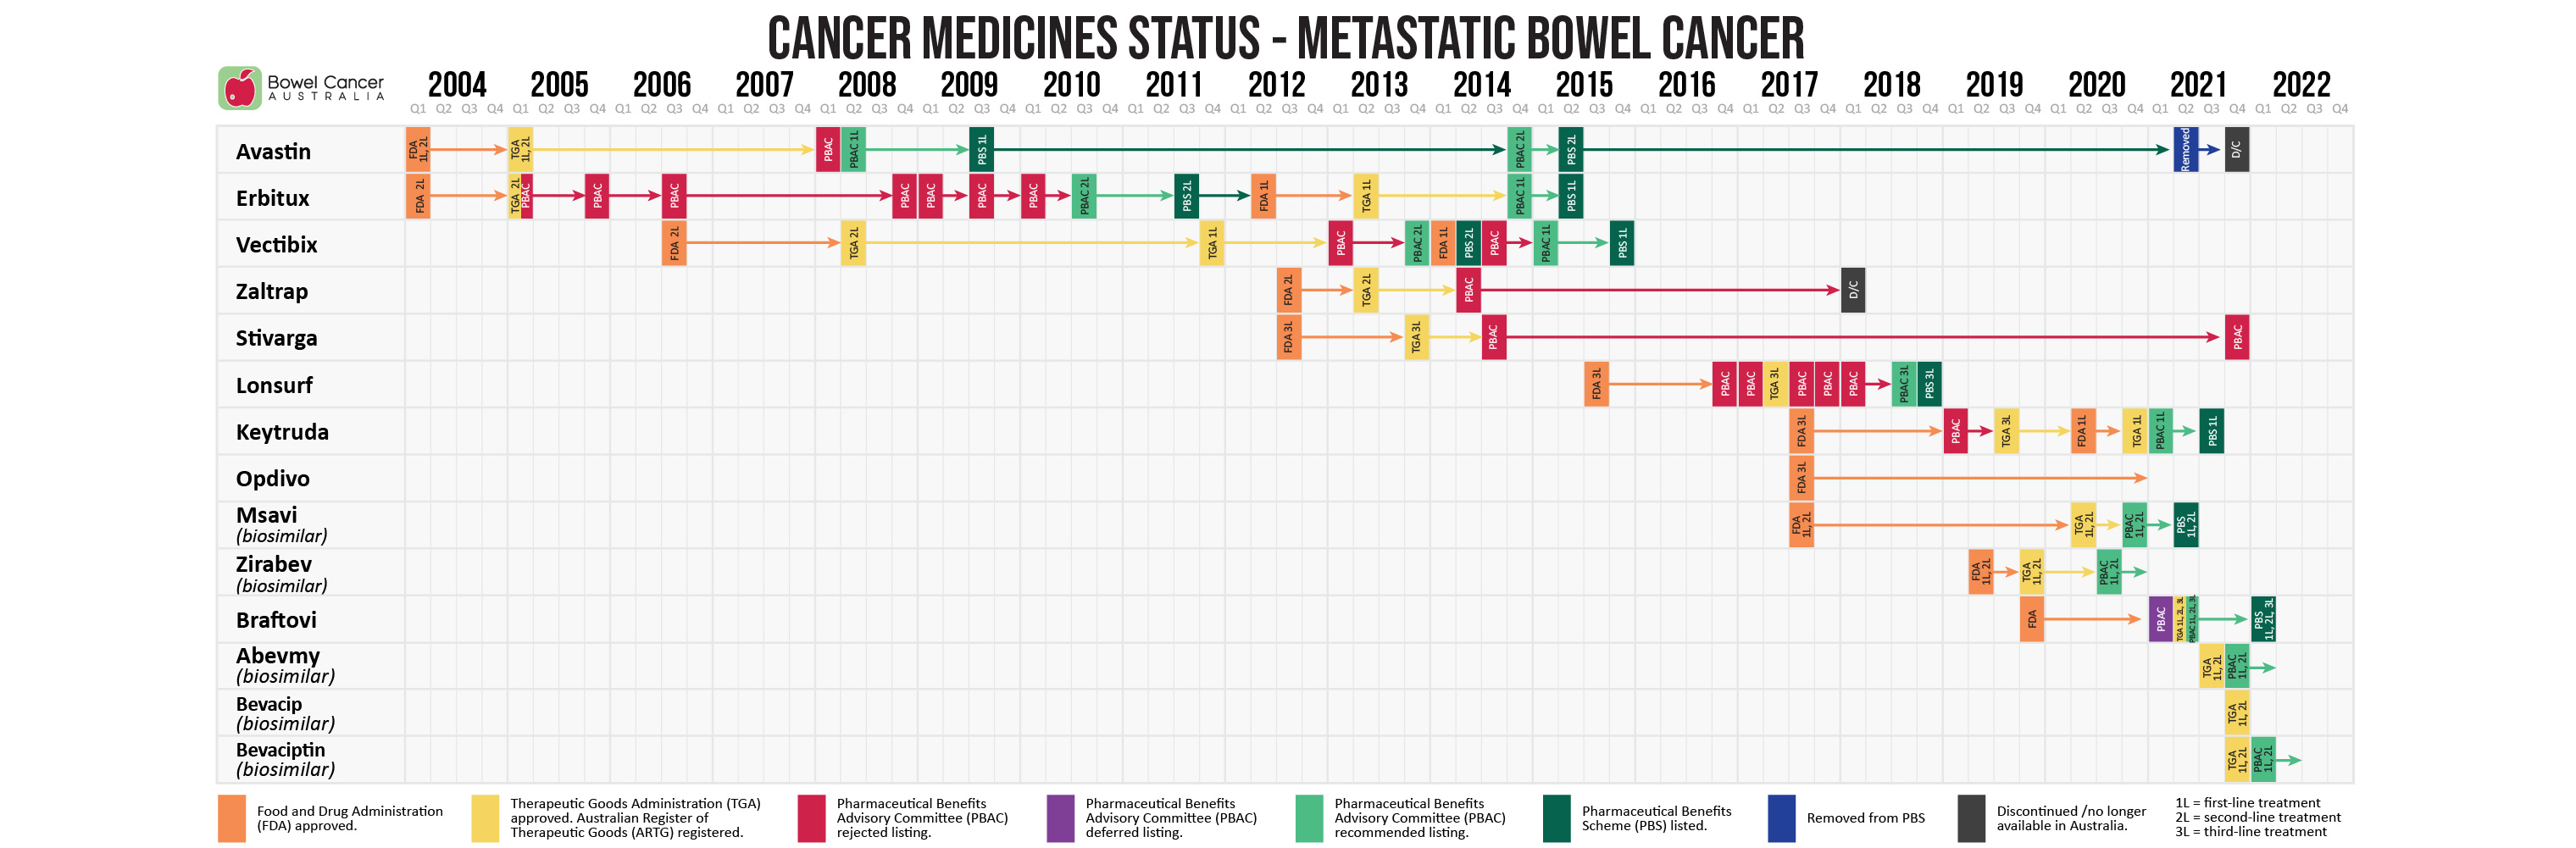 Cancer Medicines Status